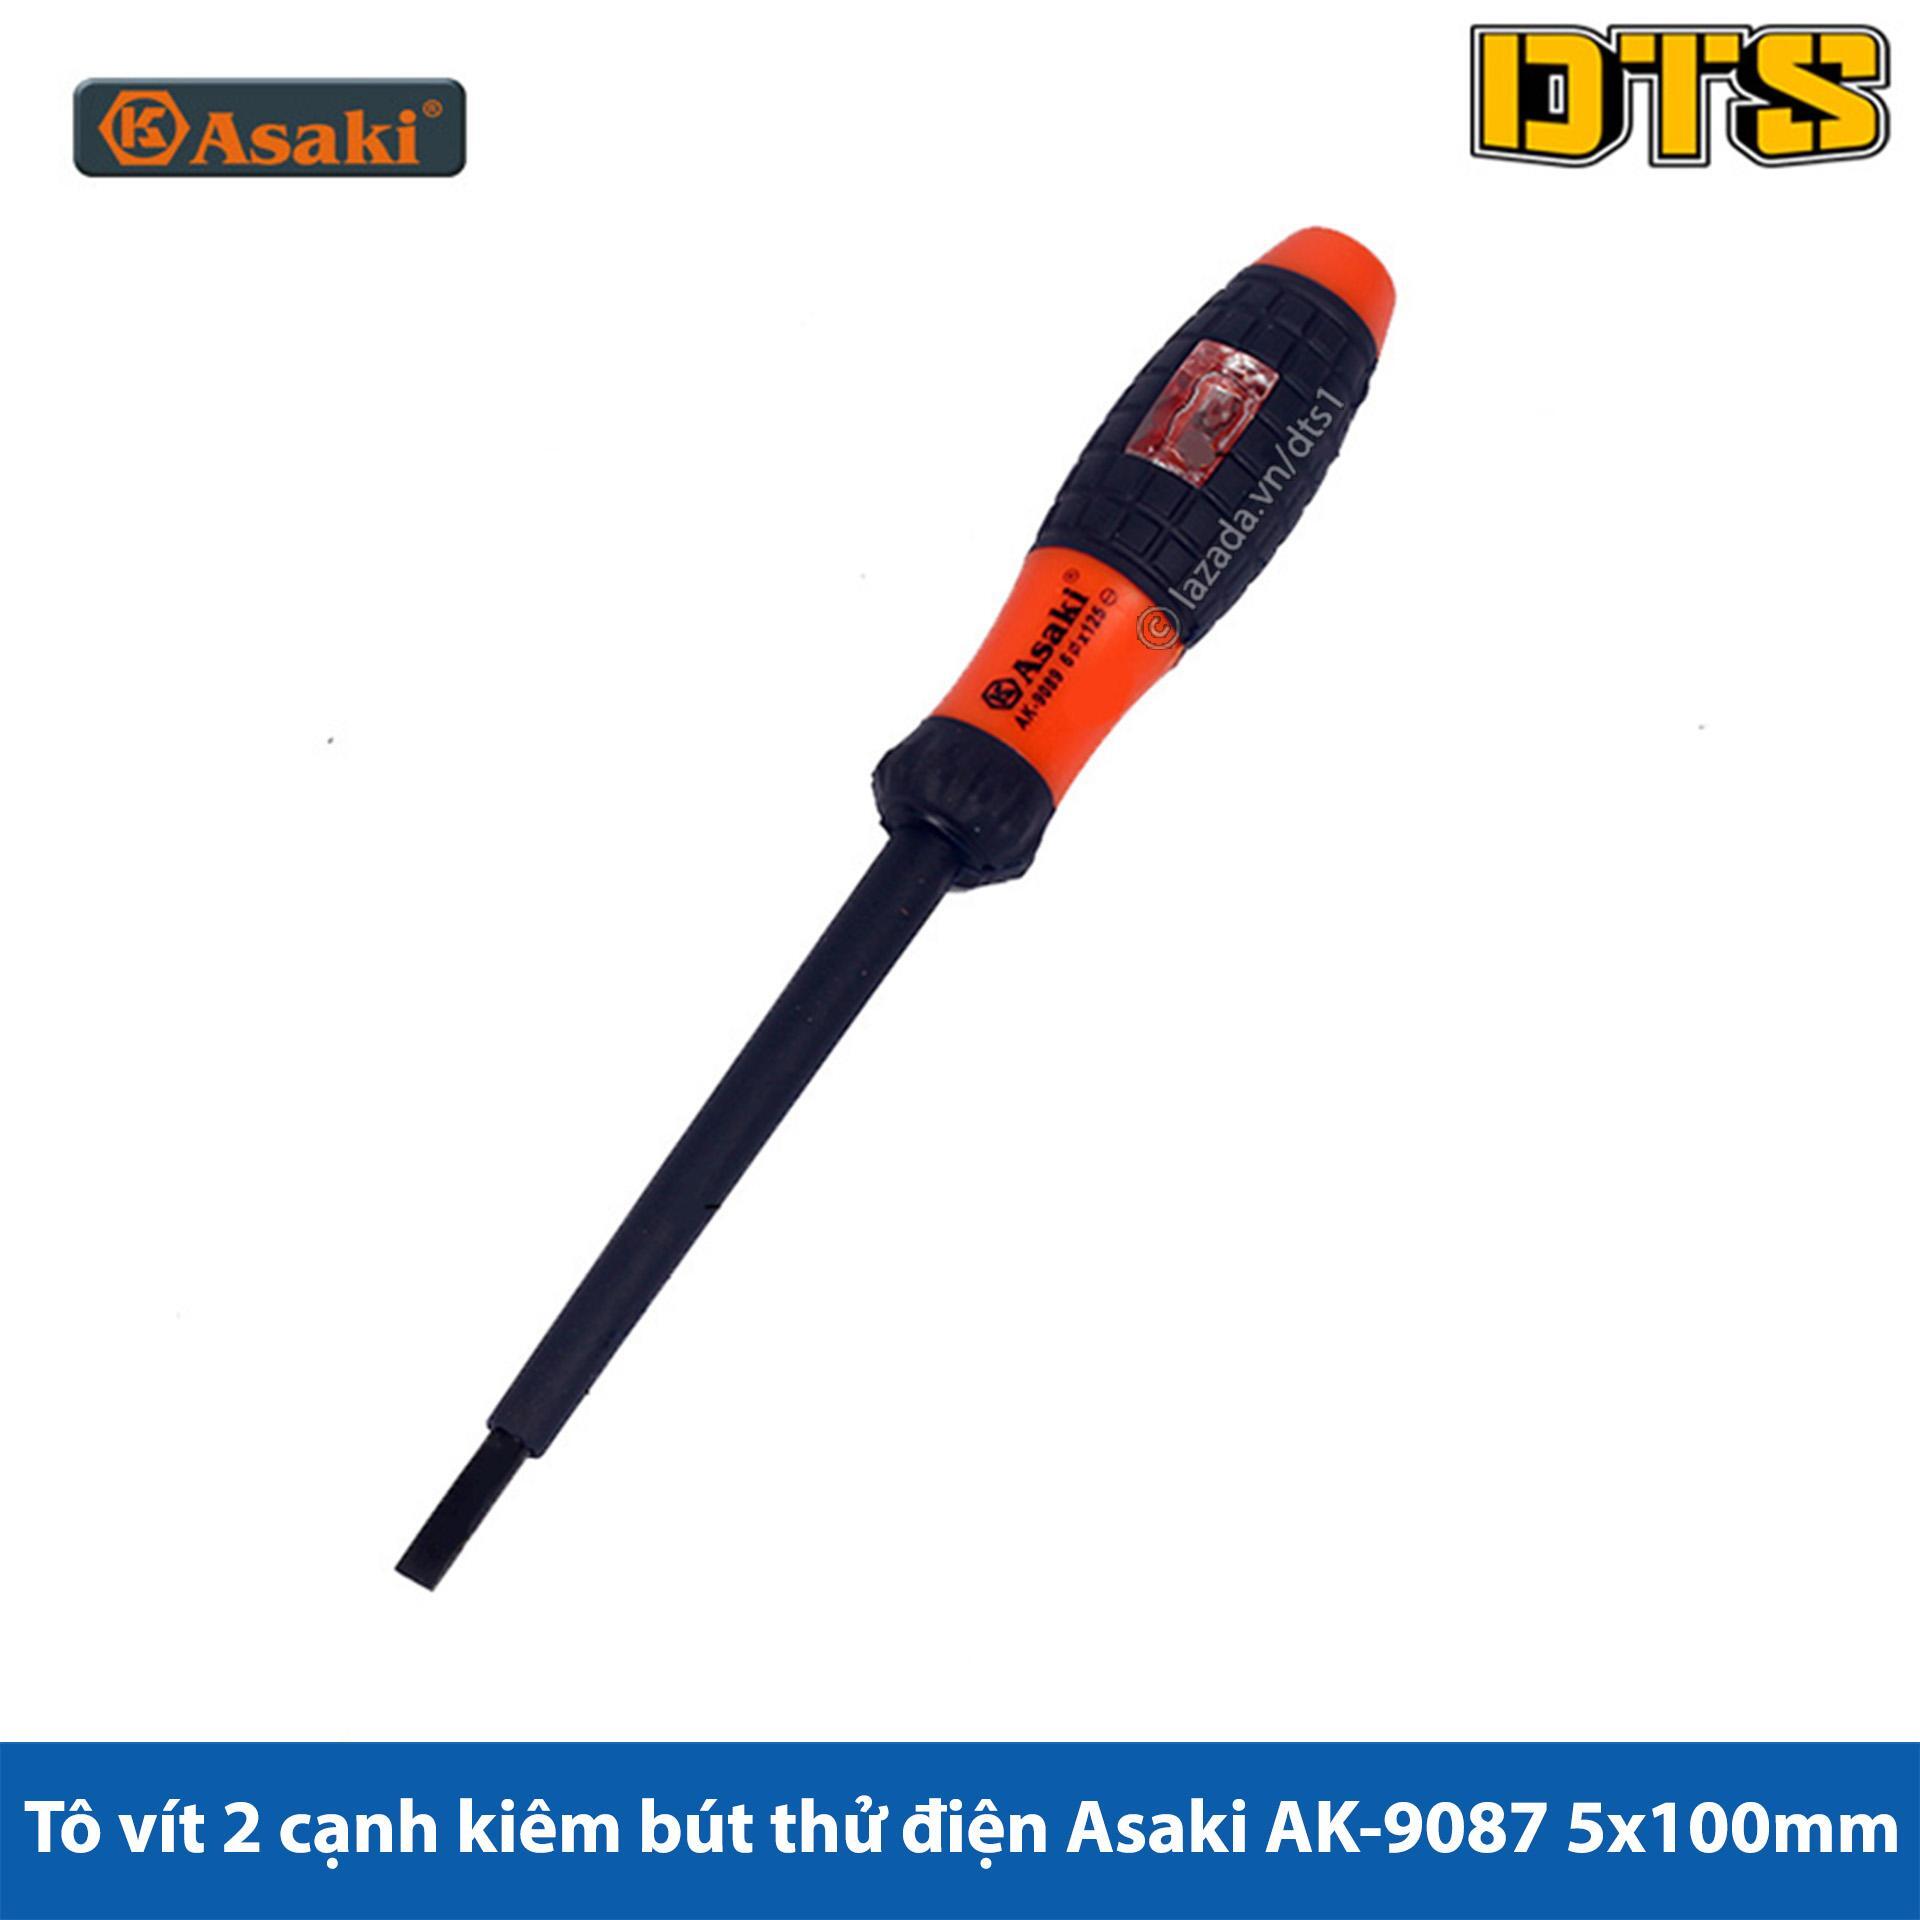 Vít dẹp cách điện và thử điện Asaki AK-9087